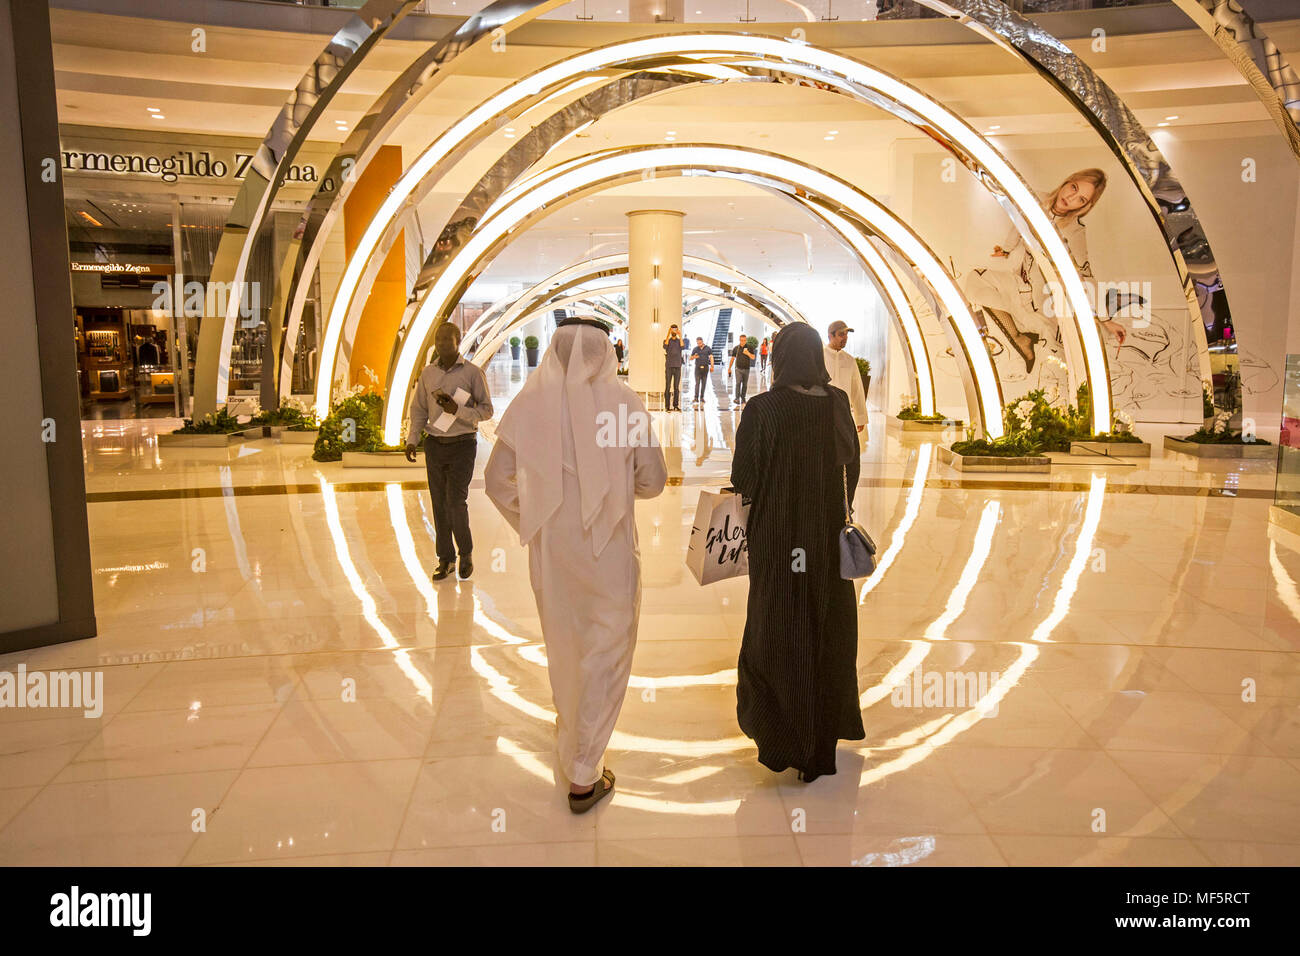 Réouverture du magasin Louis Vuitton à Mall of Emirates - Dubai Madame